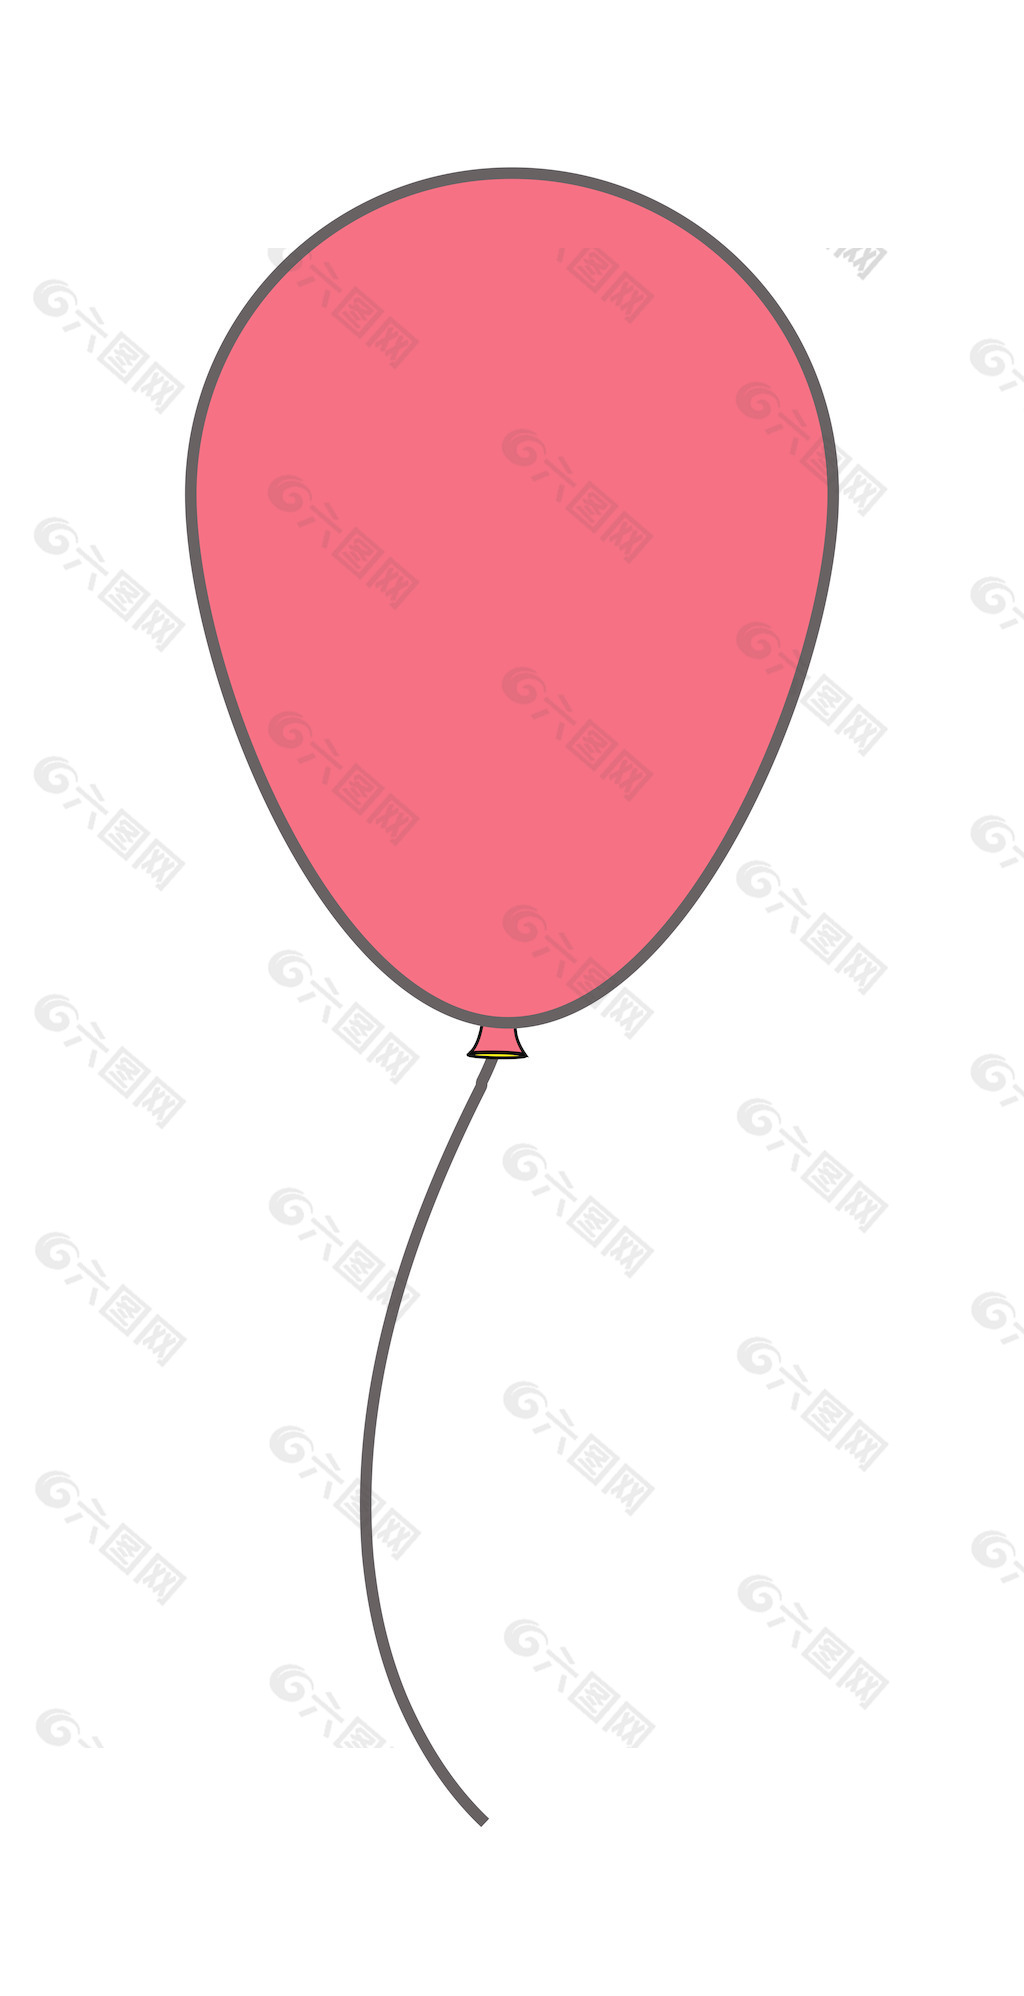 周年纪念气球